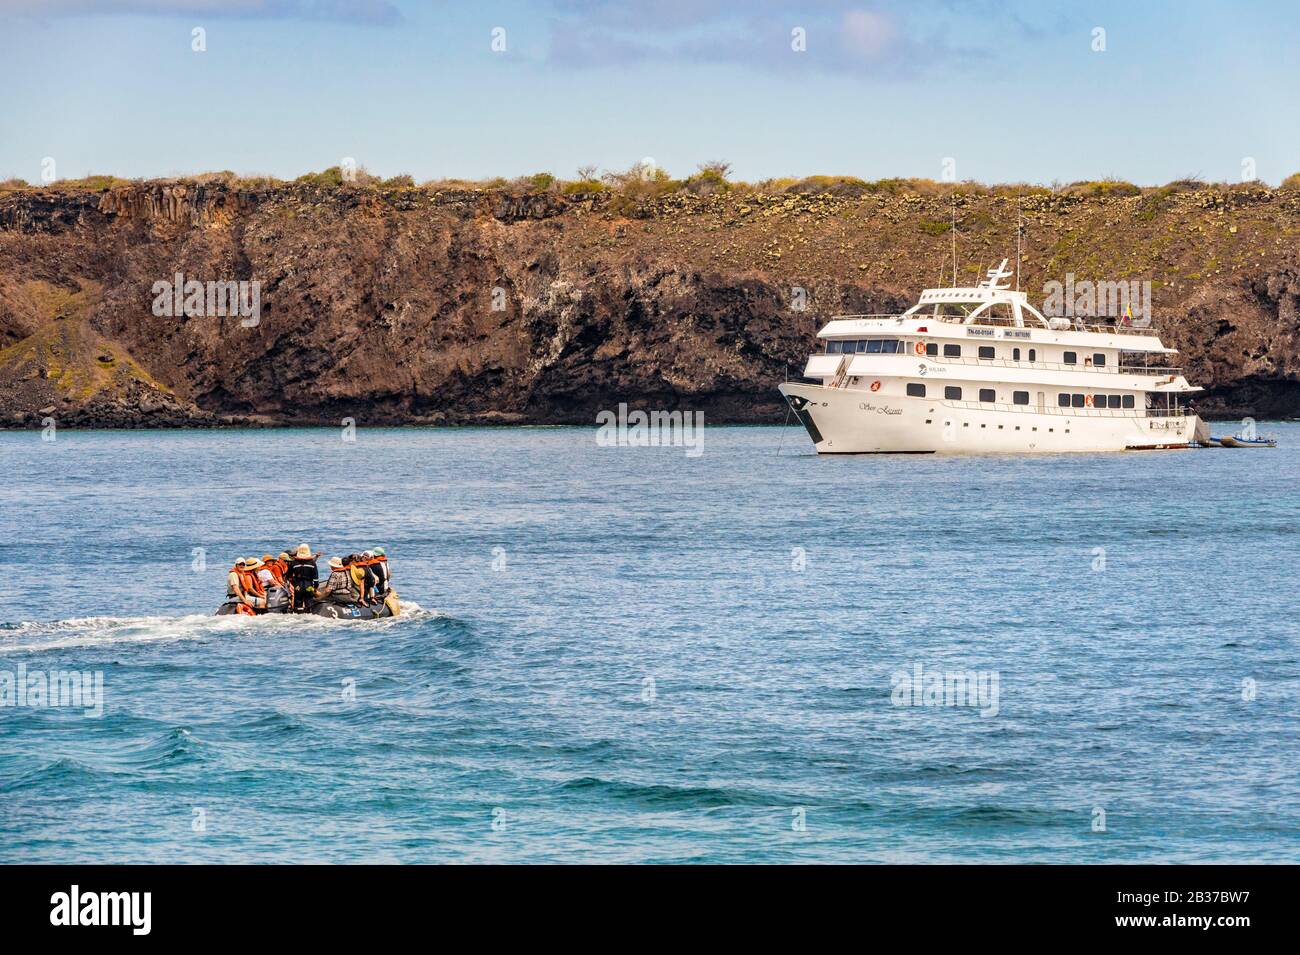 Ecuador, die Inselgruppe Galapagos, die von der UNESCO zum Weltkulturerbe erklärt wurde, Santa Cruz Island, eine Gruppe von Naturforschern kehrt mit dem Boot von der Insel Plaza Sud zurück Stockfoto